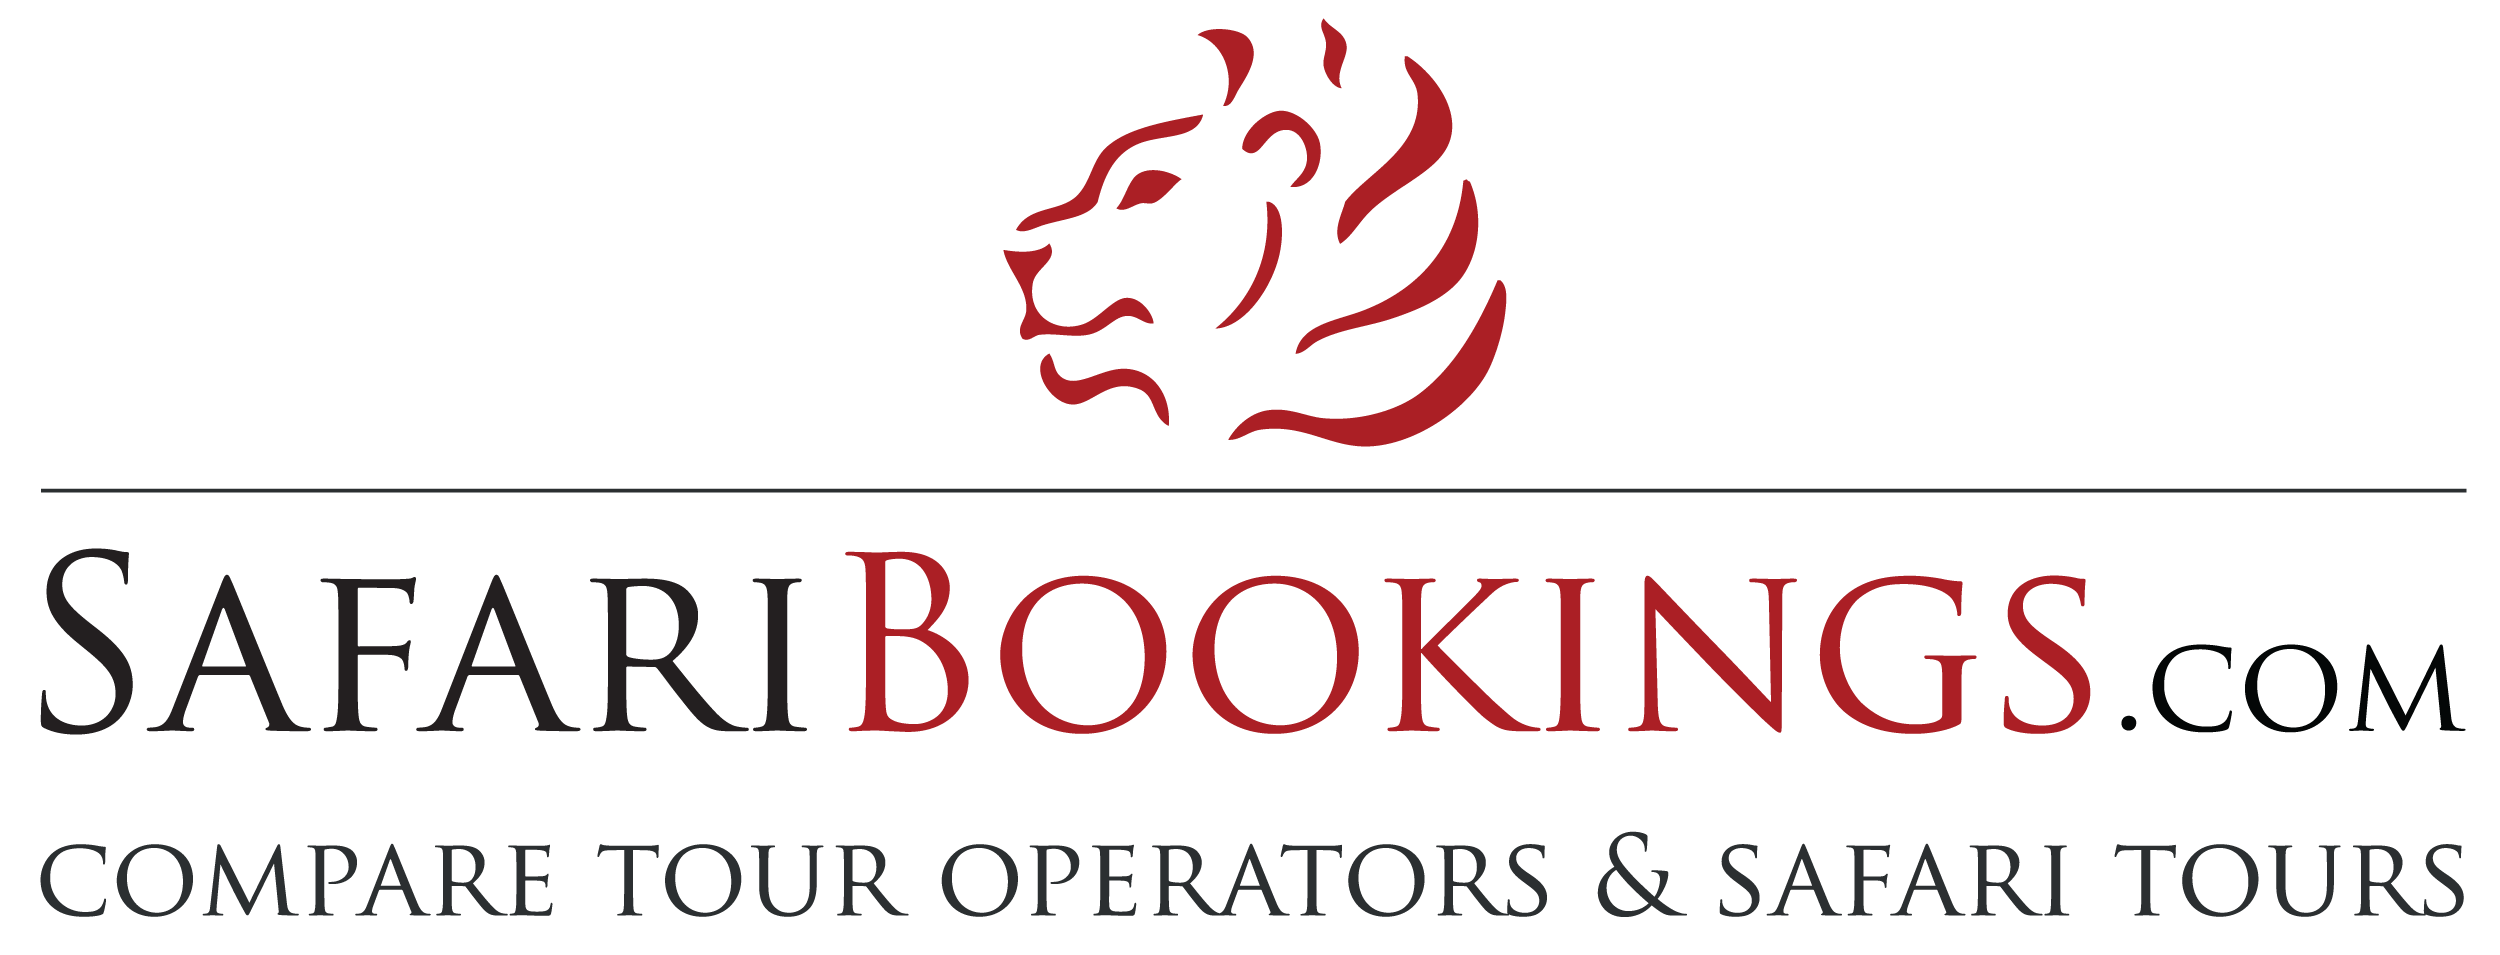 safaribookings logo